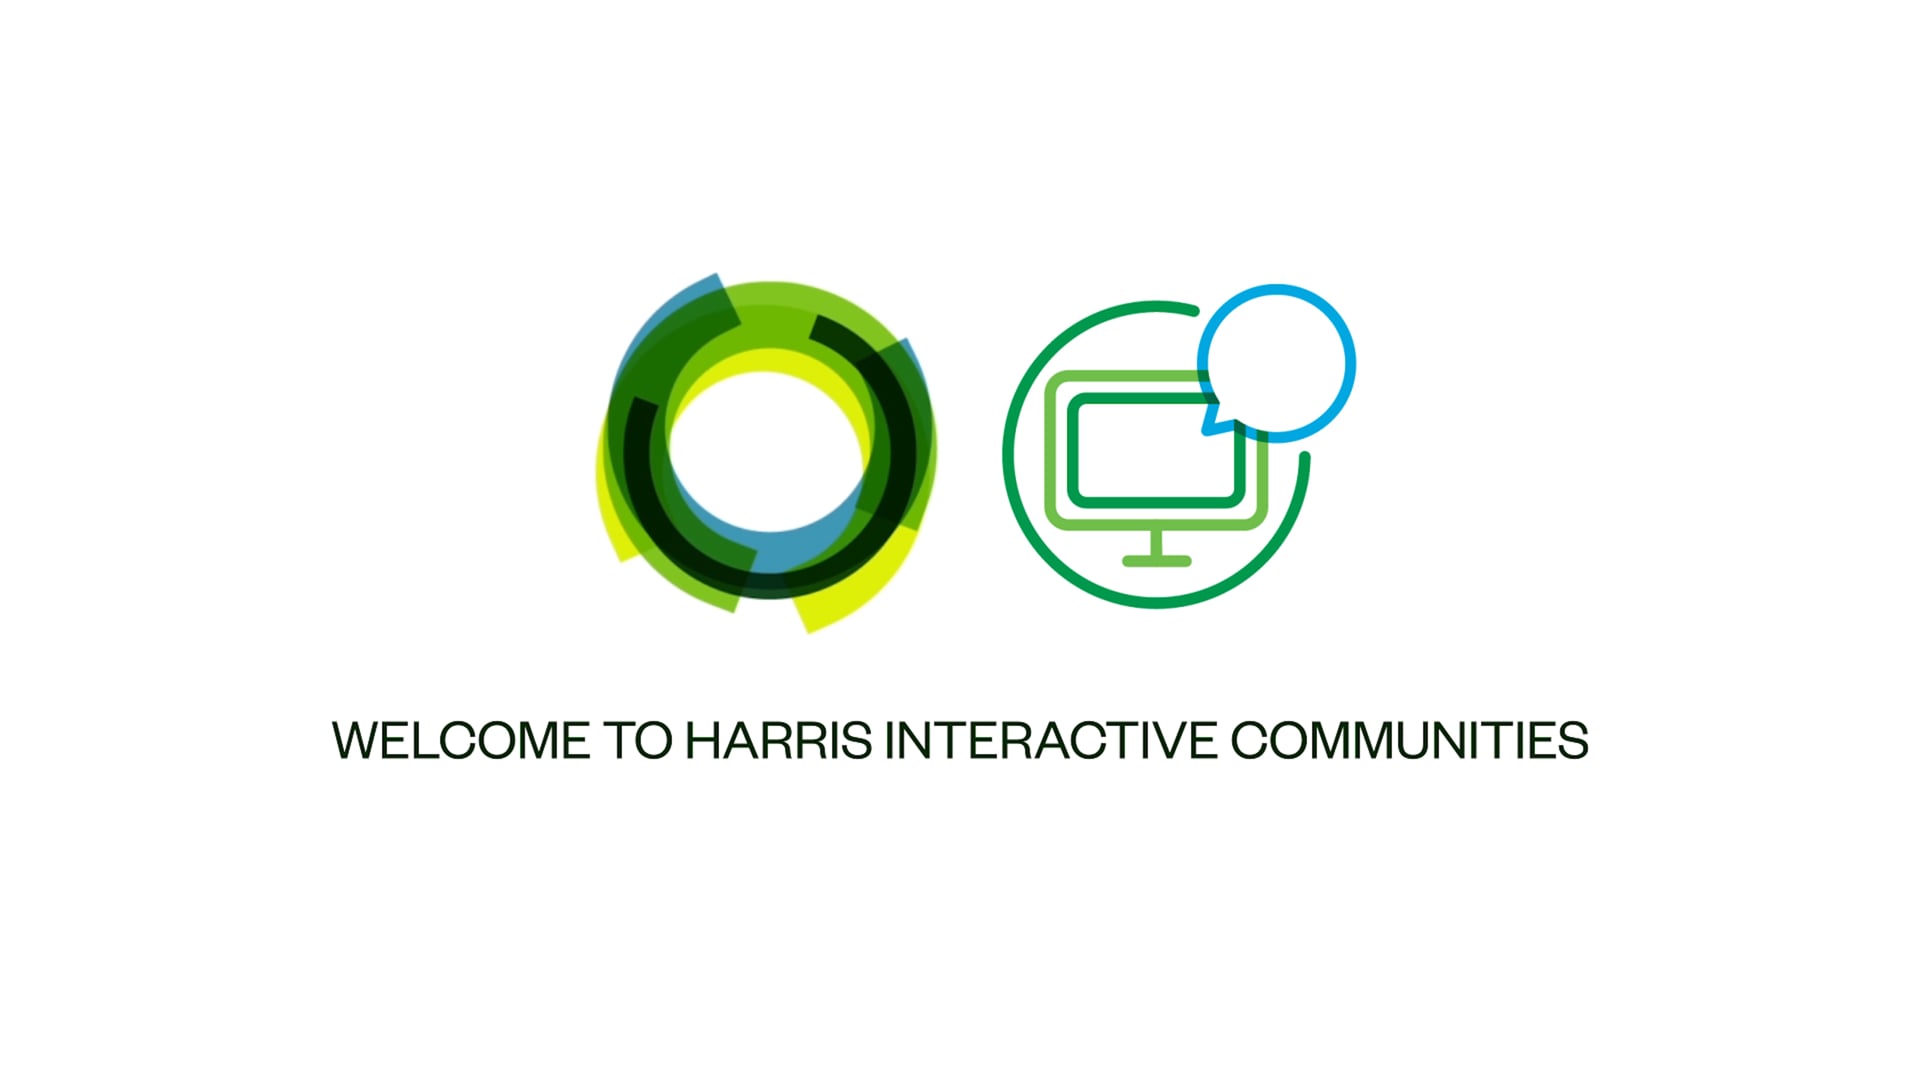 Harris Online Communities